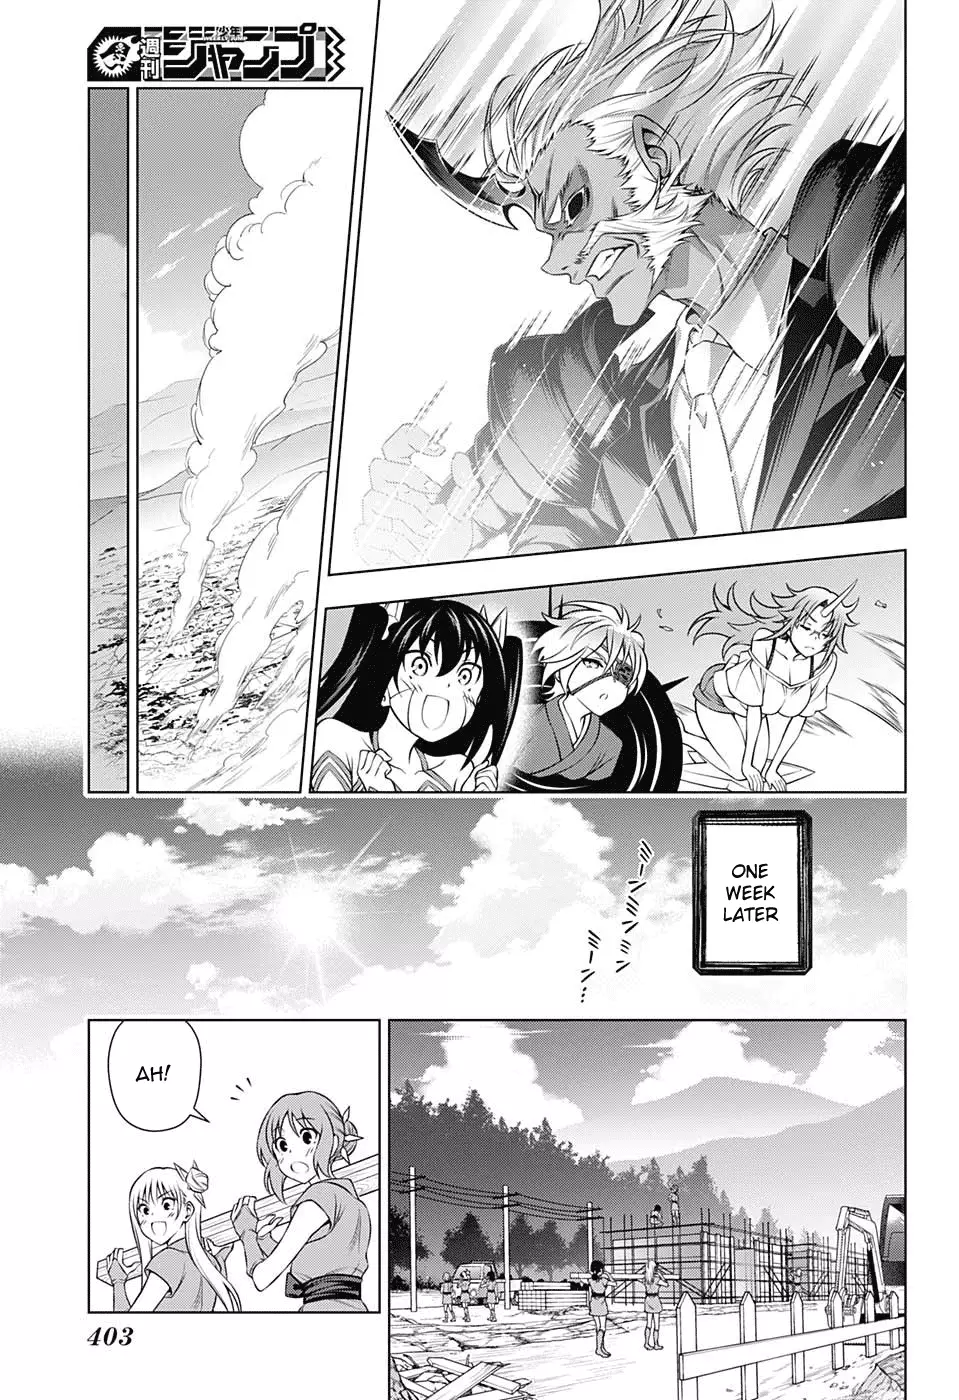 Yuragi-sou no Yuuna-san - 138 page 13-7132aae8